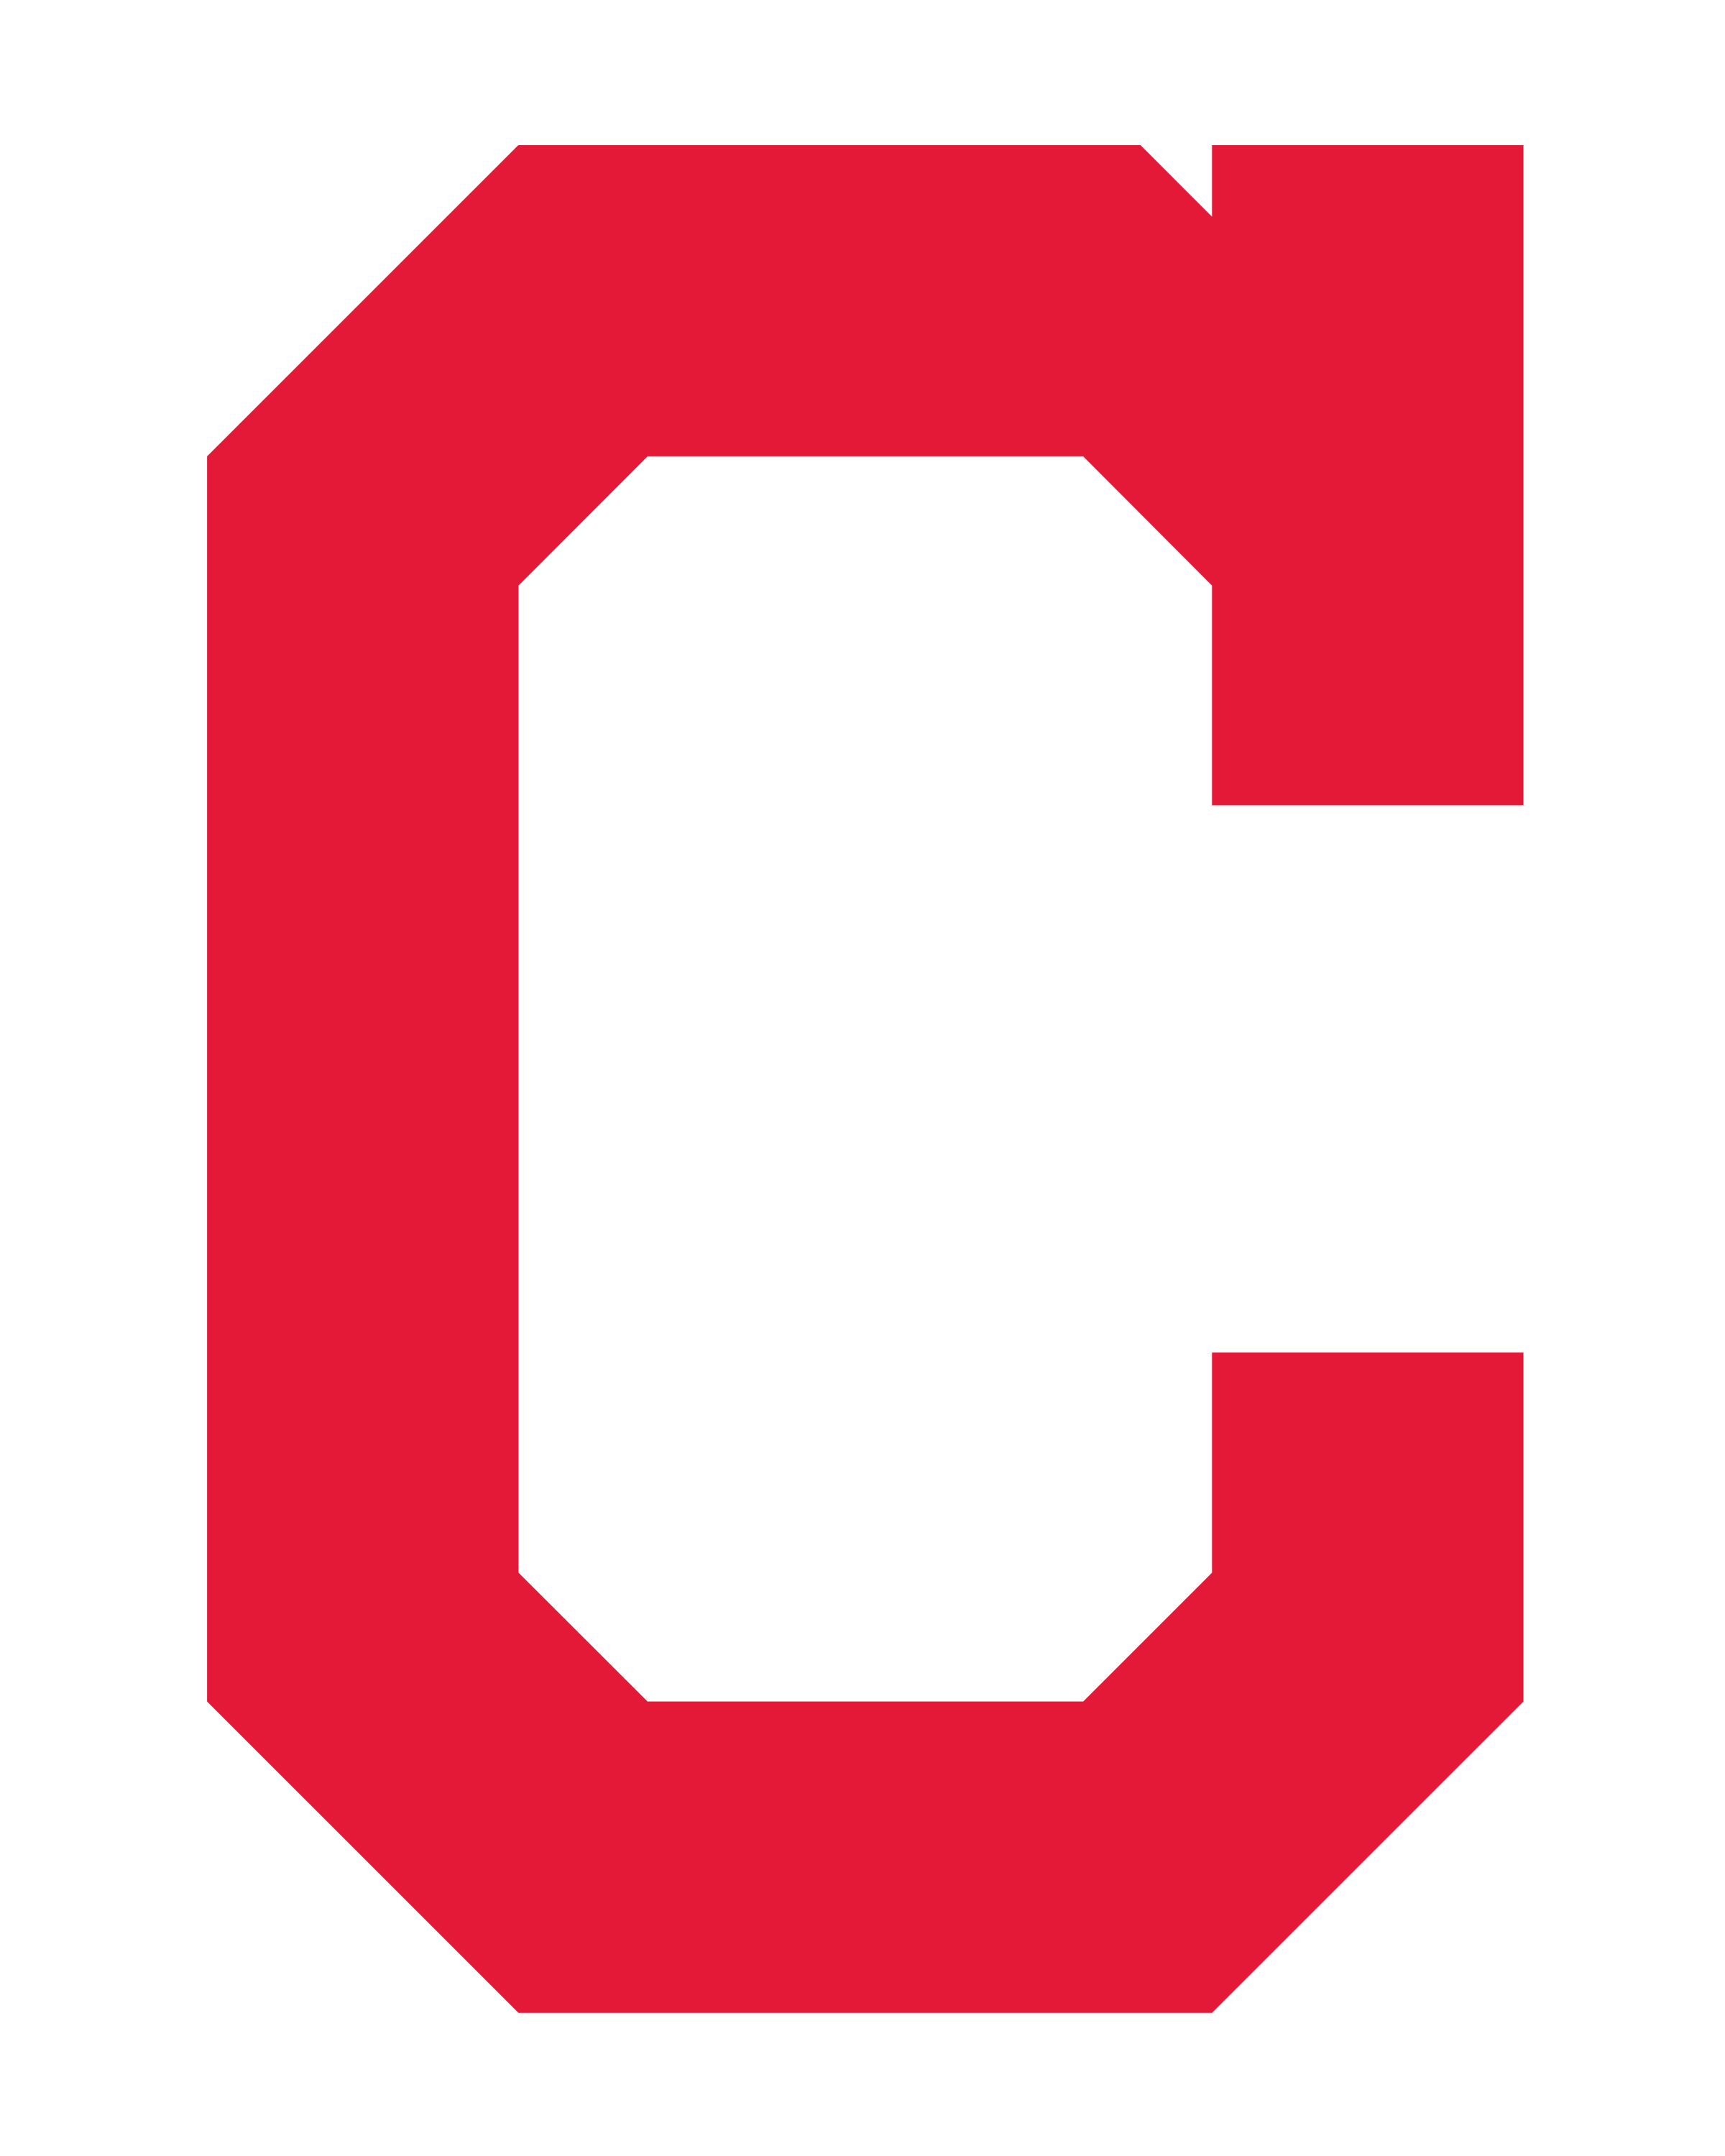 Large Red C Logo - Cleveland Indians Logo PNG Transparent & SVG Vector